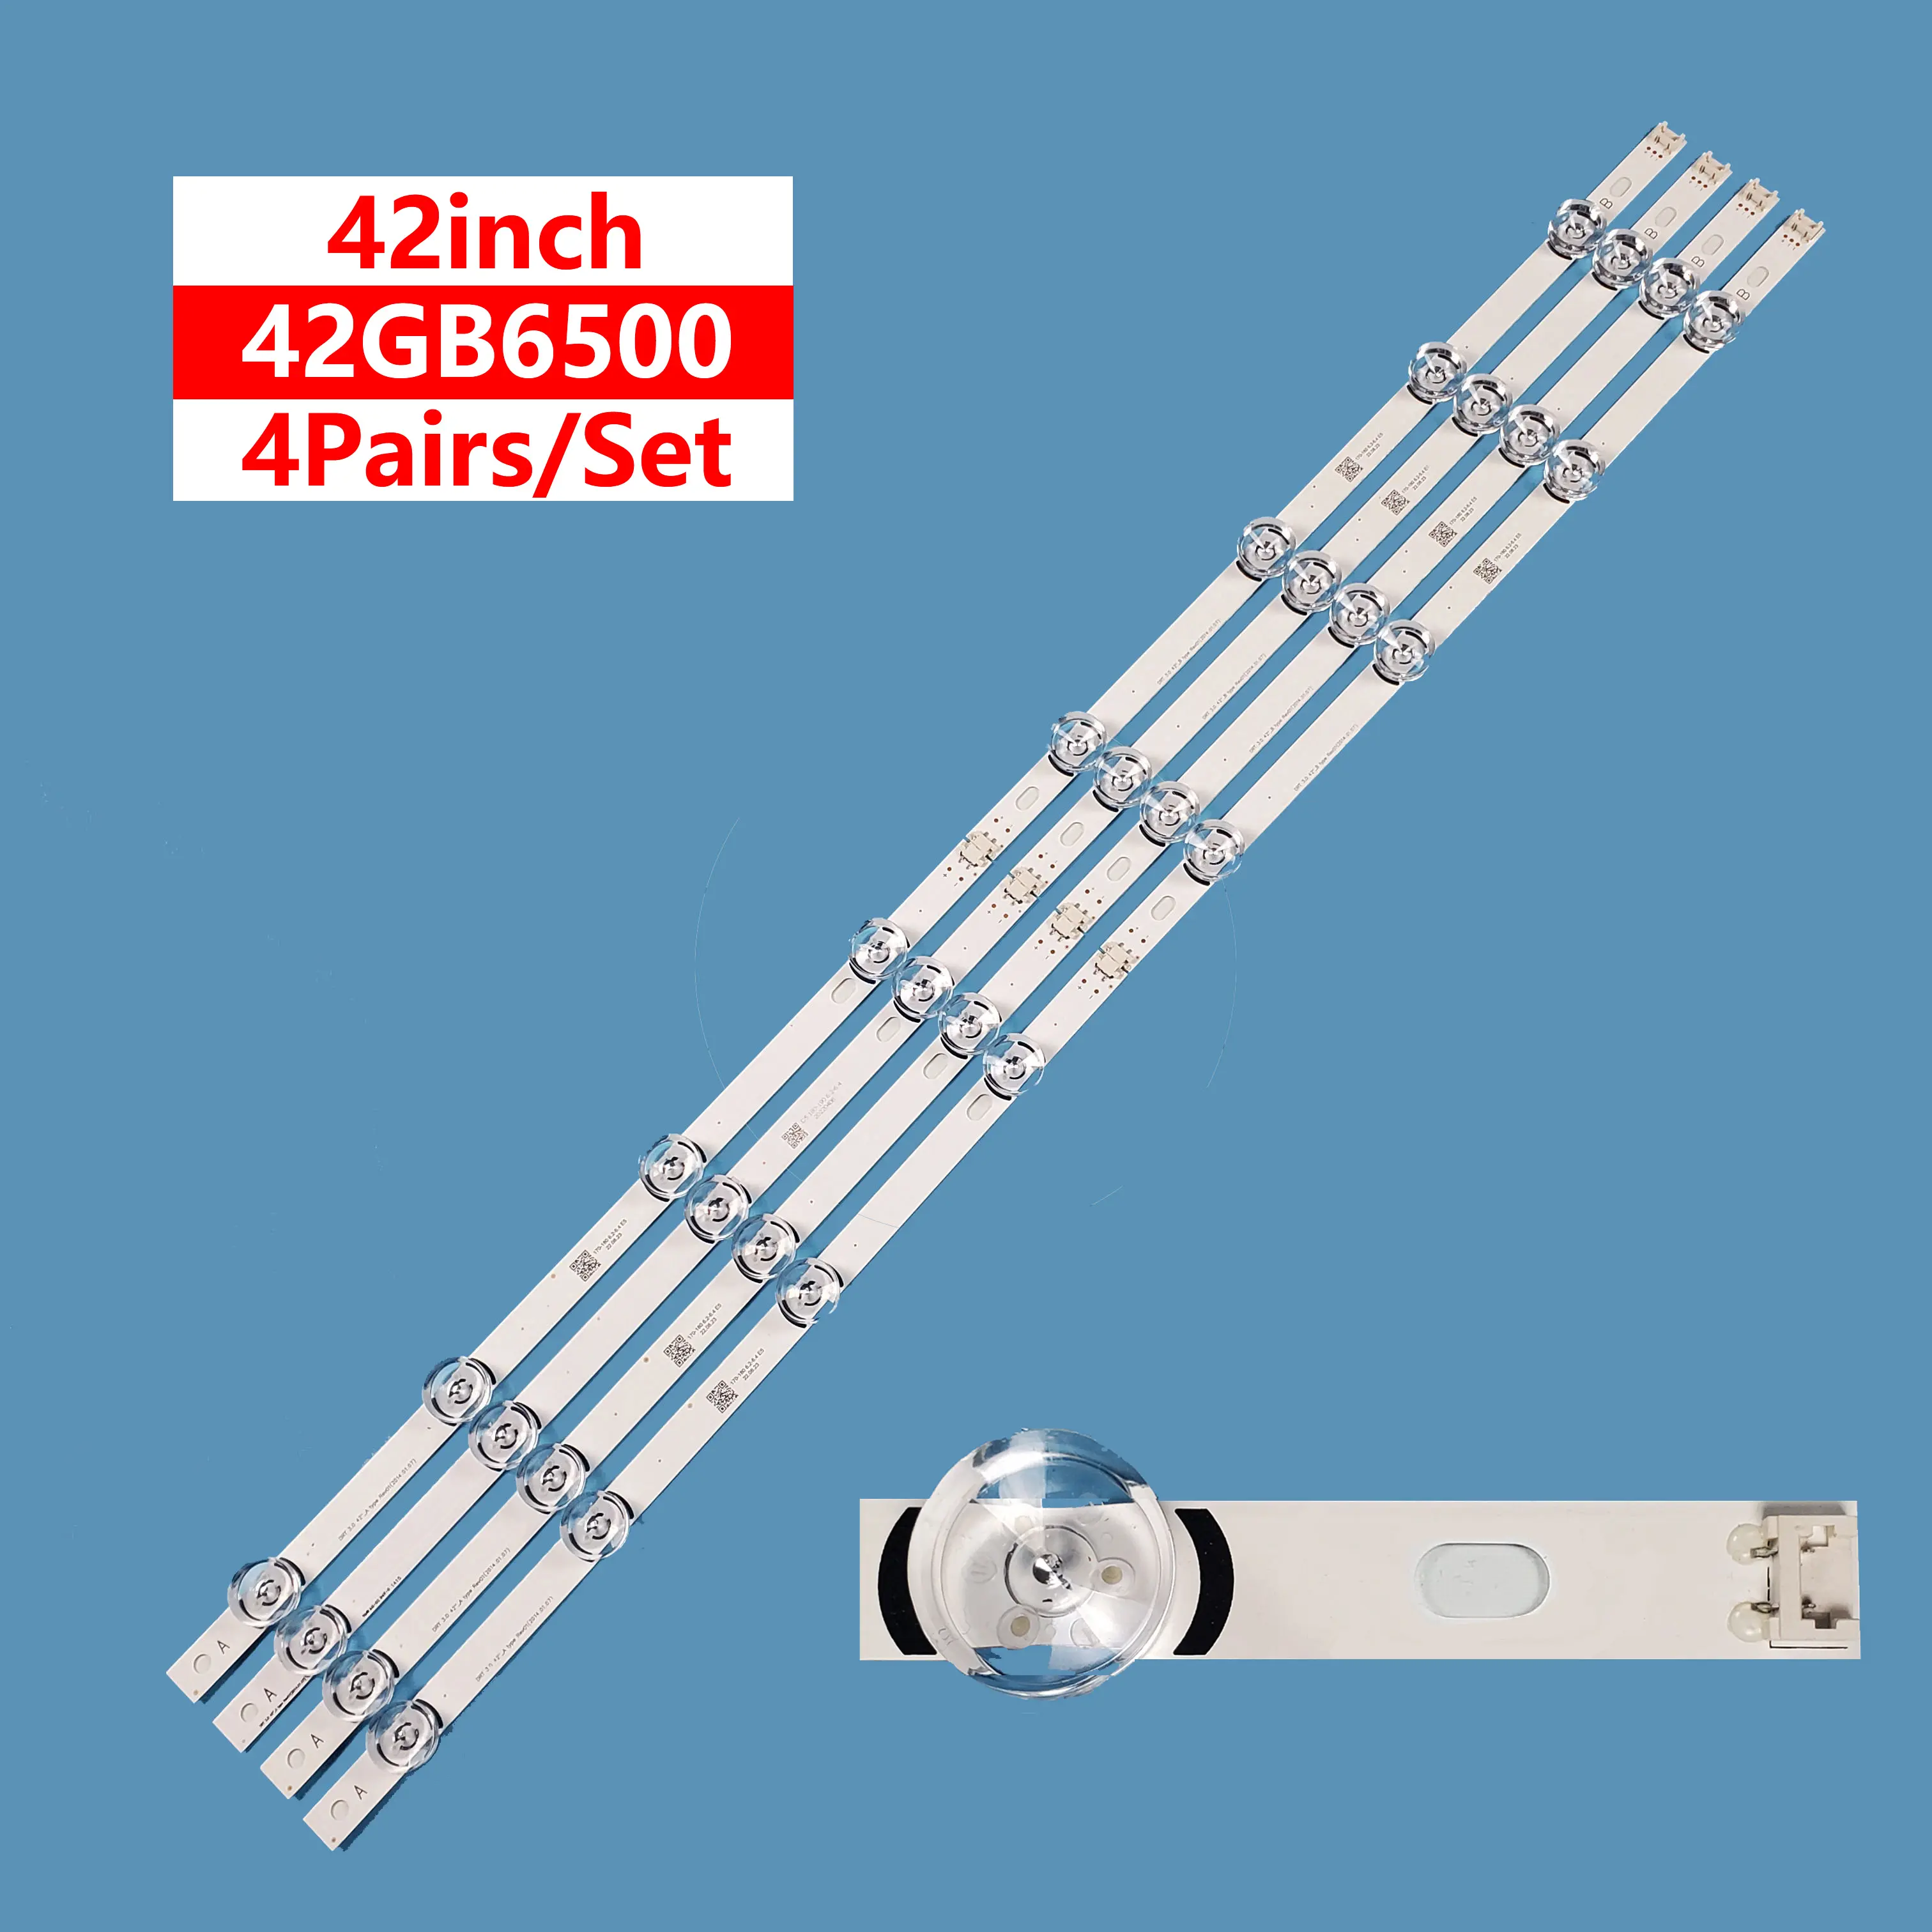 טלוויזיה led strtip 42LB DRT 3 .0 42 B LED רצועת טלוויזיה תאורה אחורית עבור LG 42 אינץ 42LB5600 42lb5700 42LF6200 led בר תאורה אחורית כדי תיקון